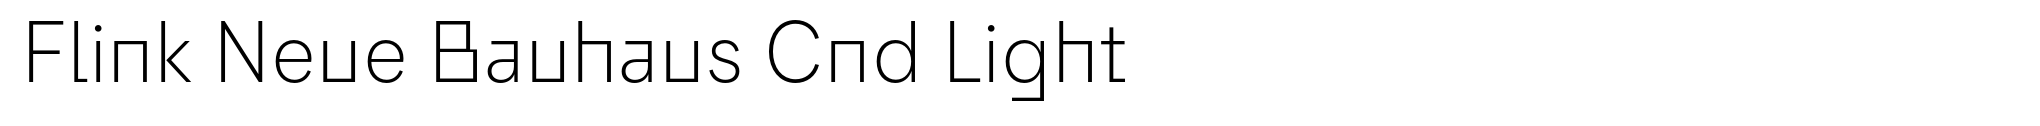 Flink Neue Bauhaus Cnd Light image